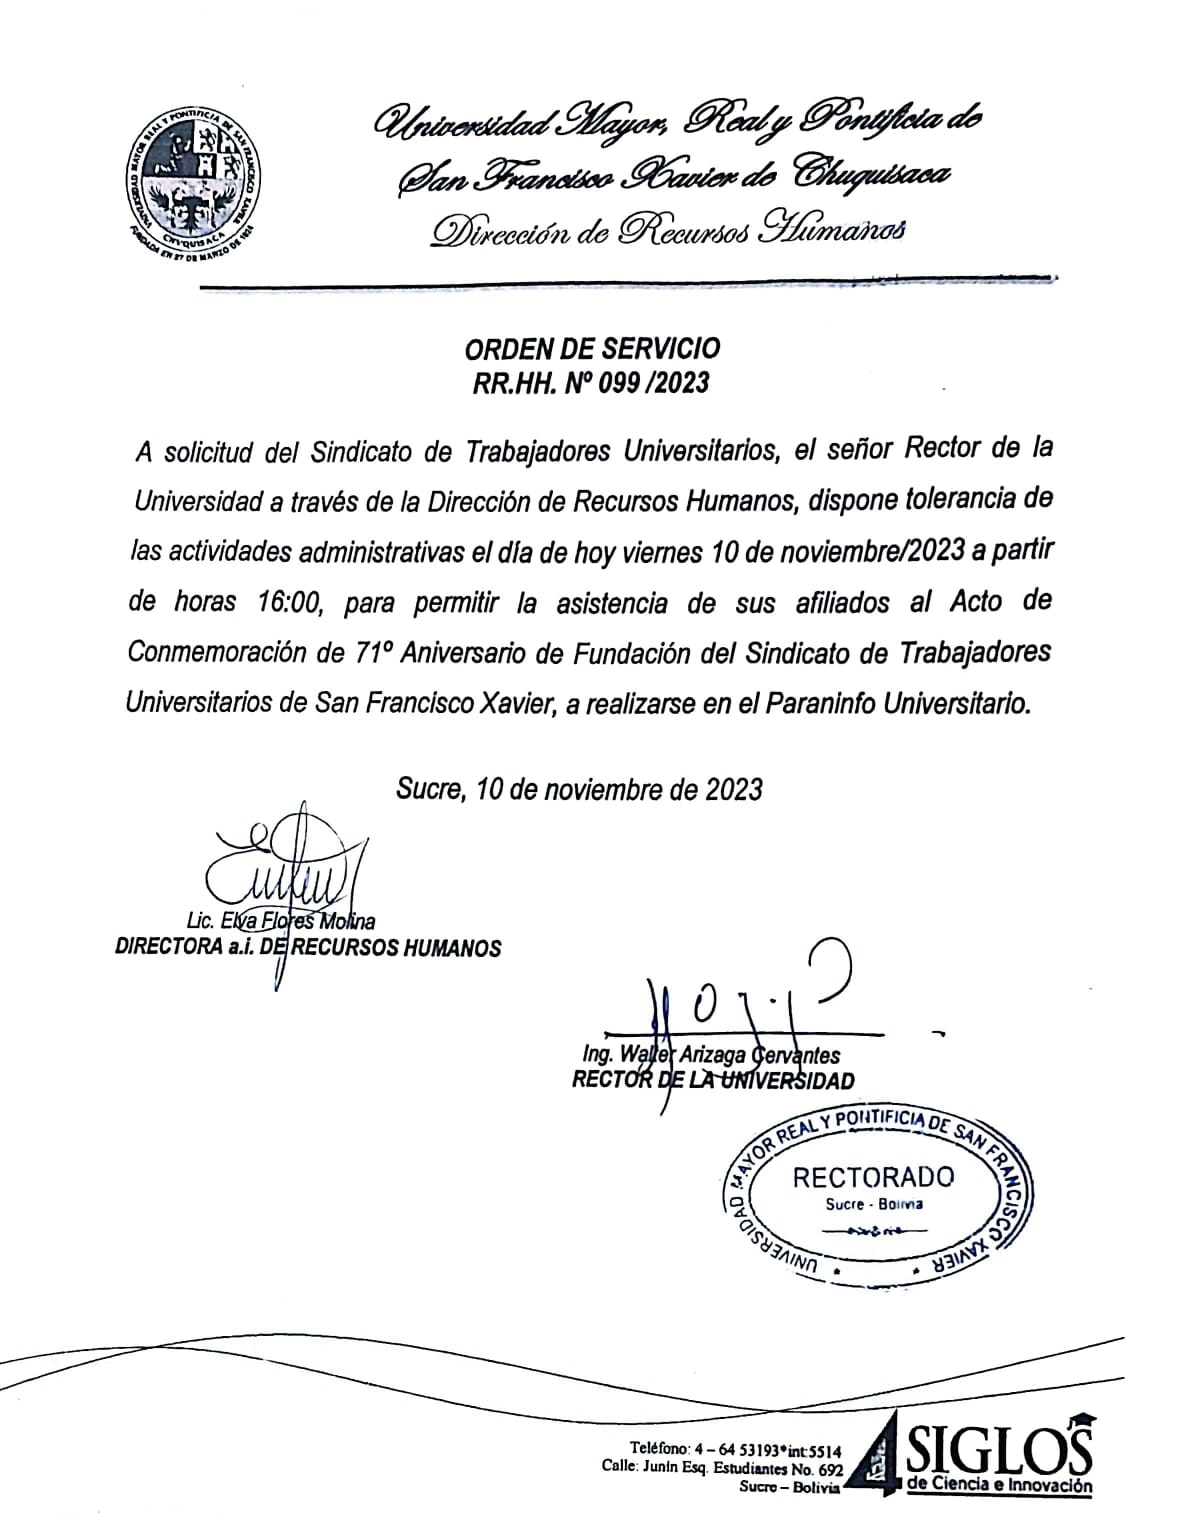 ORDEN DE SERVICIO RR.HH. Nº 099/2023, TOLERANCIA ACTIVIDADES ADMINISTRATIVAS FUNDACIÓN STUSFX.